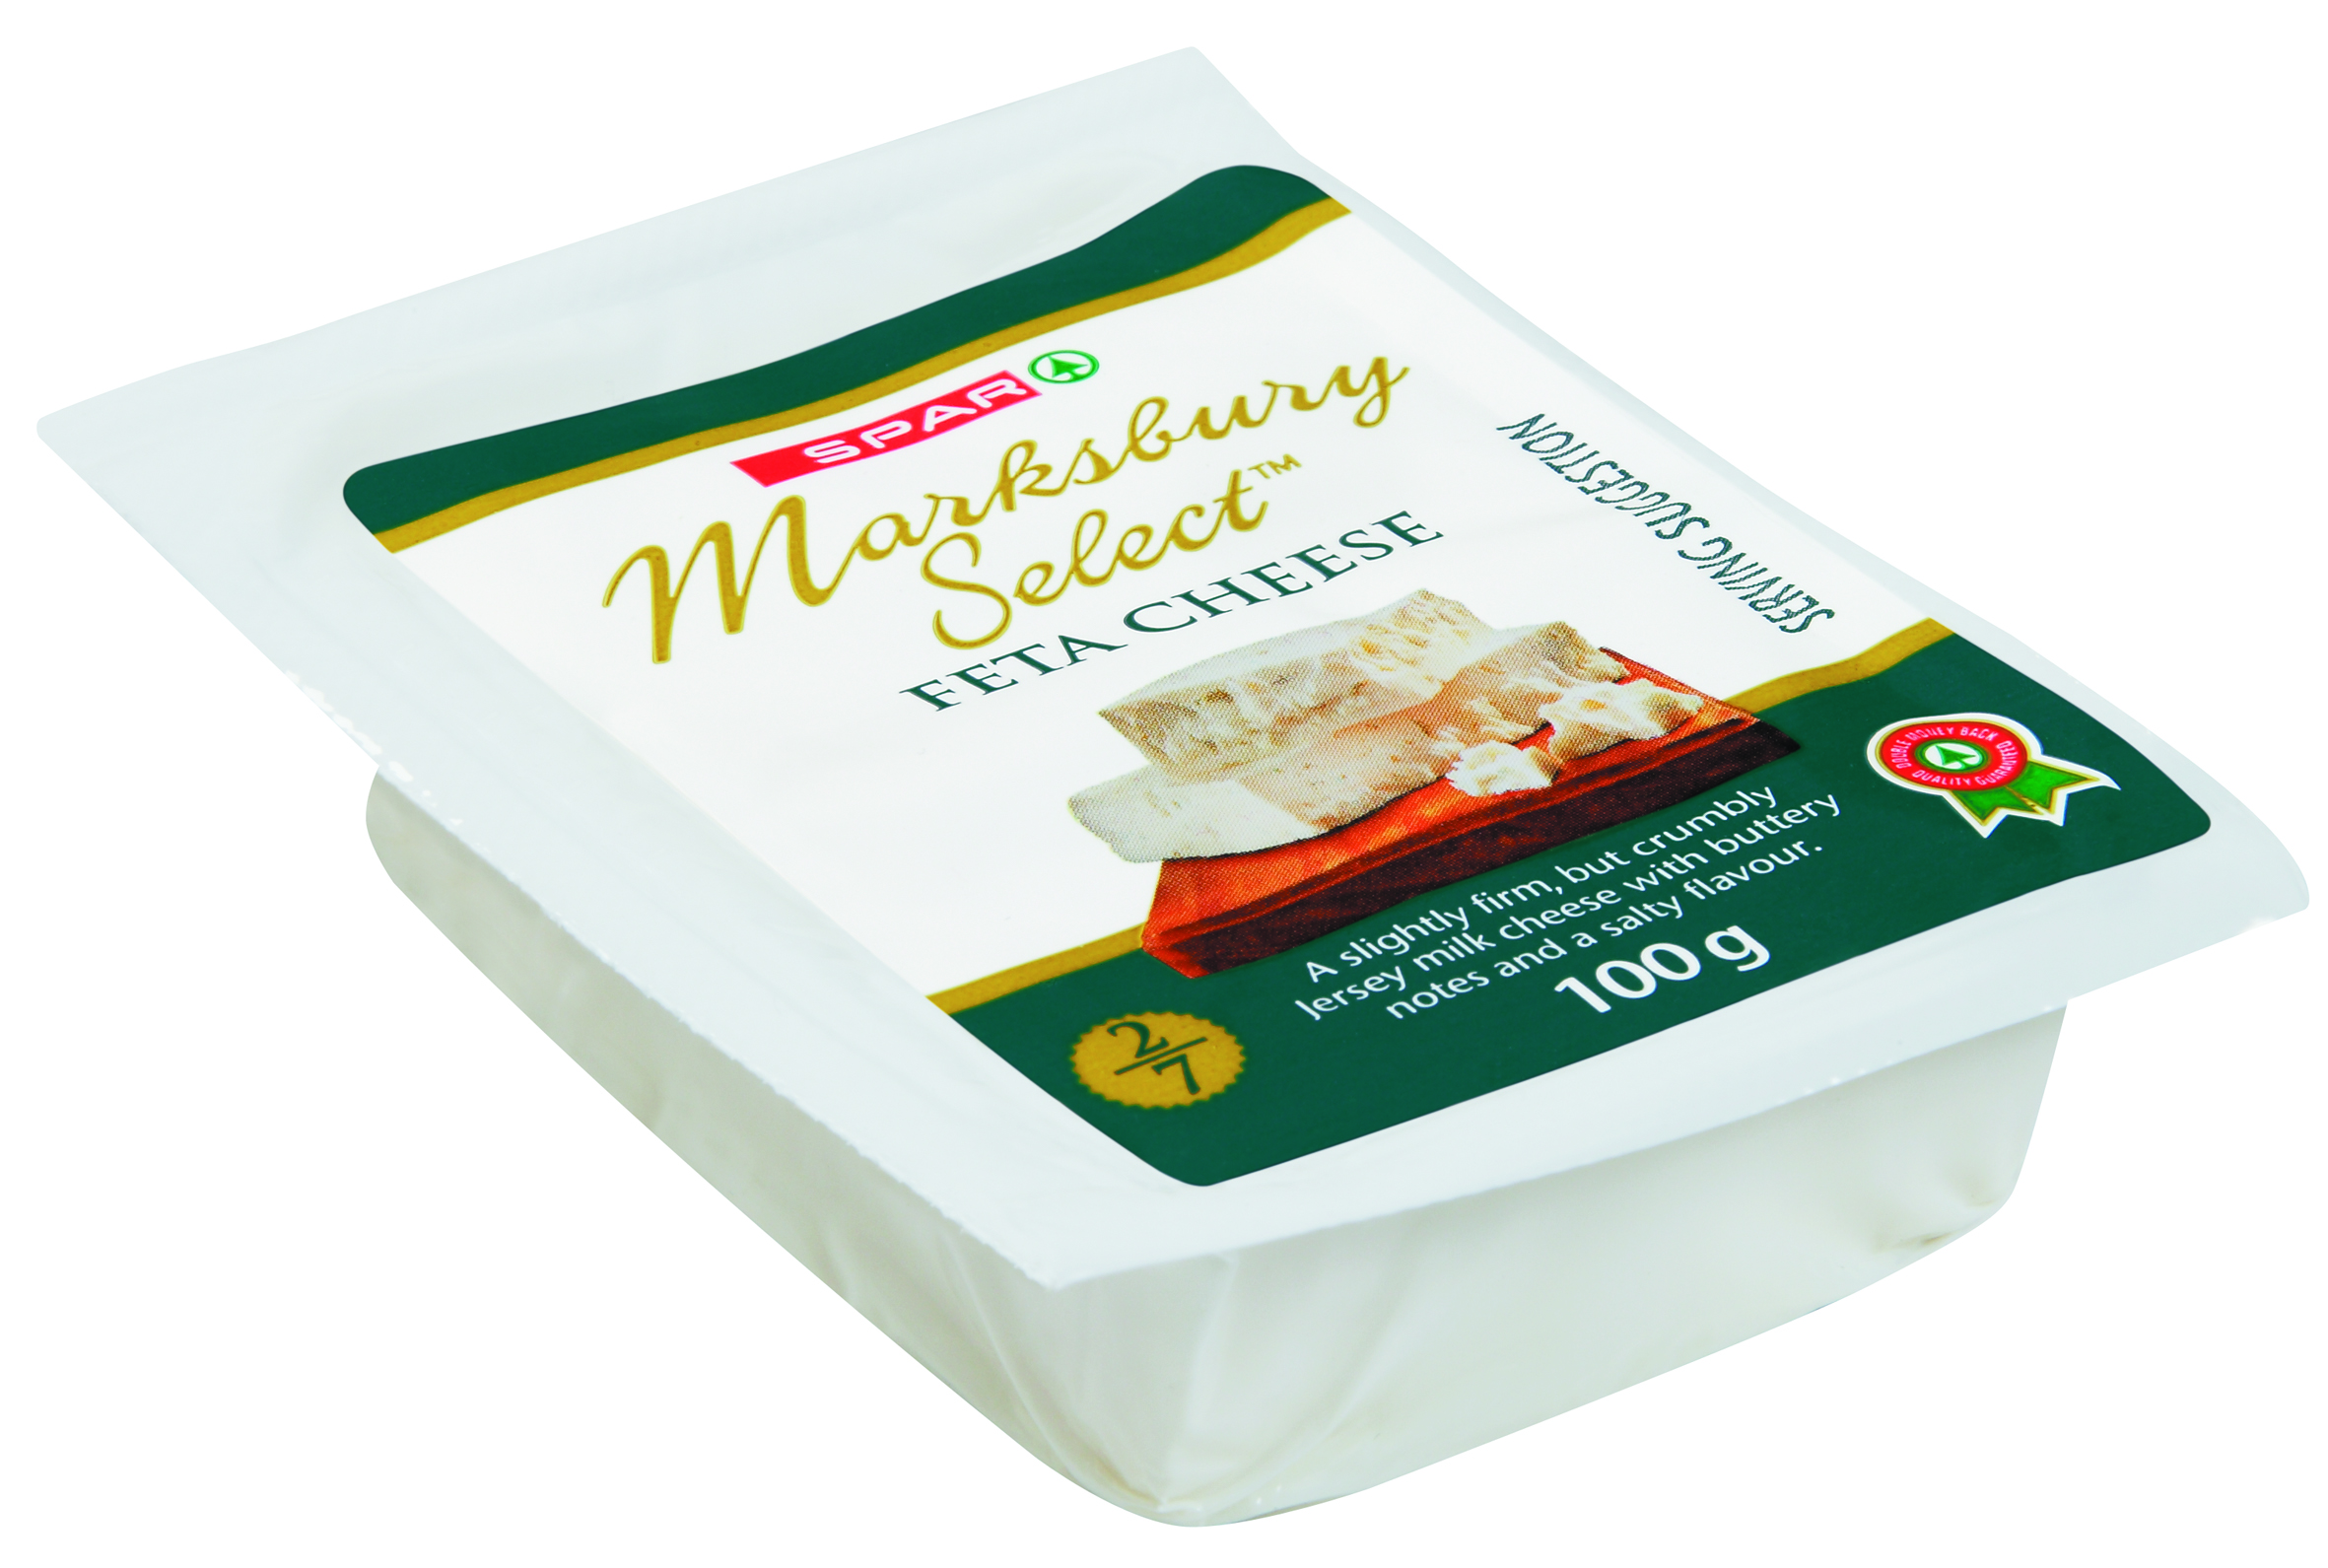 marksbury select cheese feta